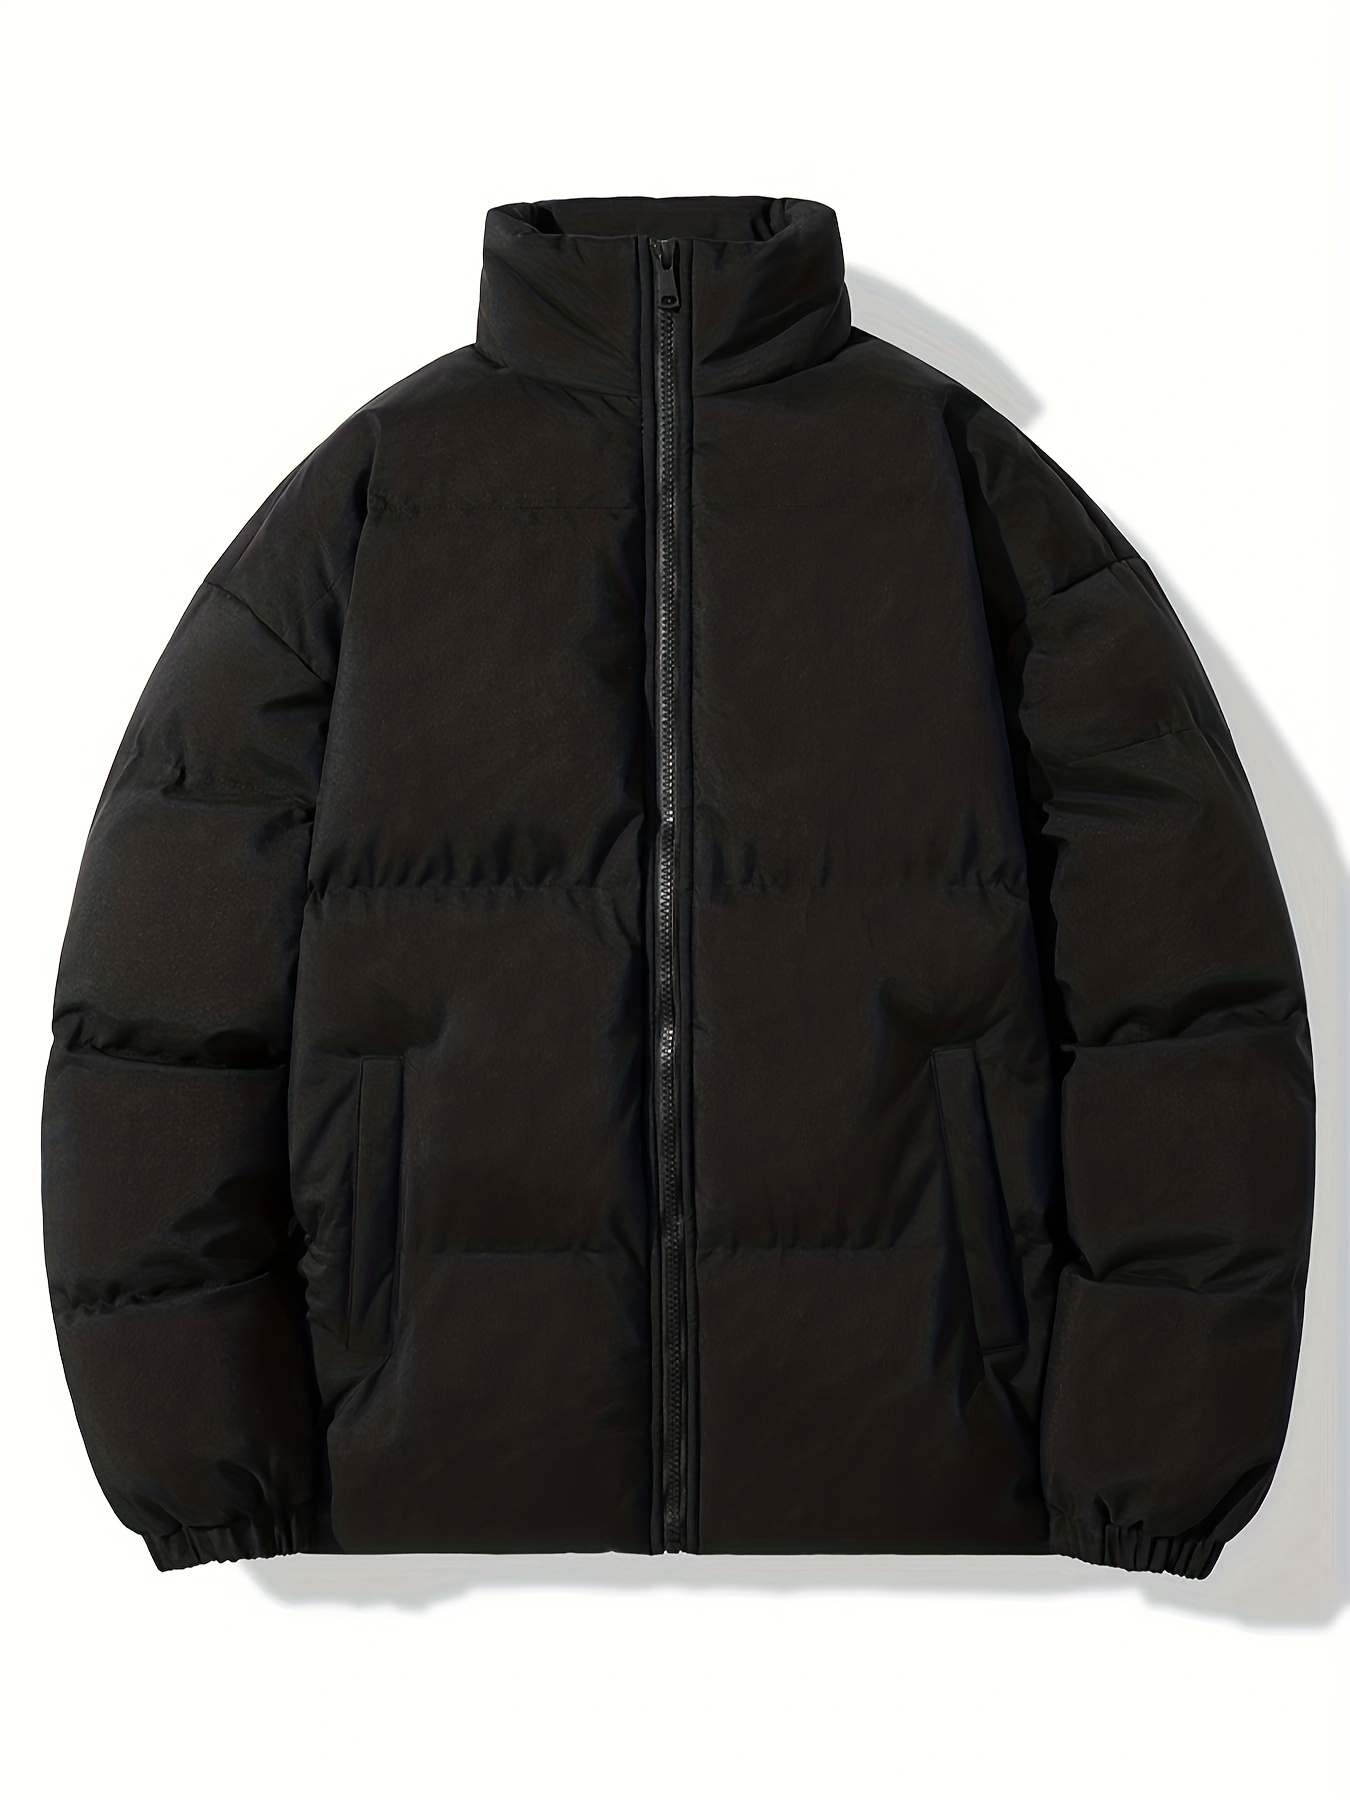 Winter Coats & Jackets: Men's Big & Tall Outerwear